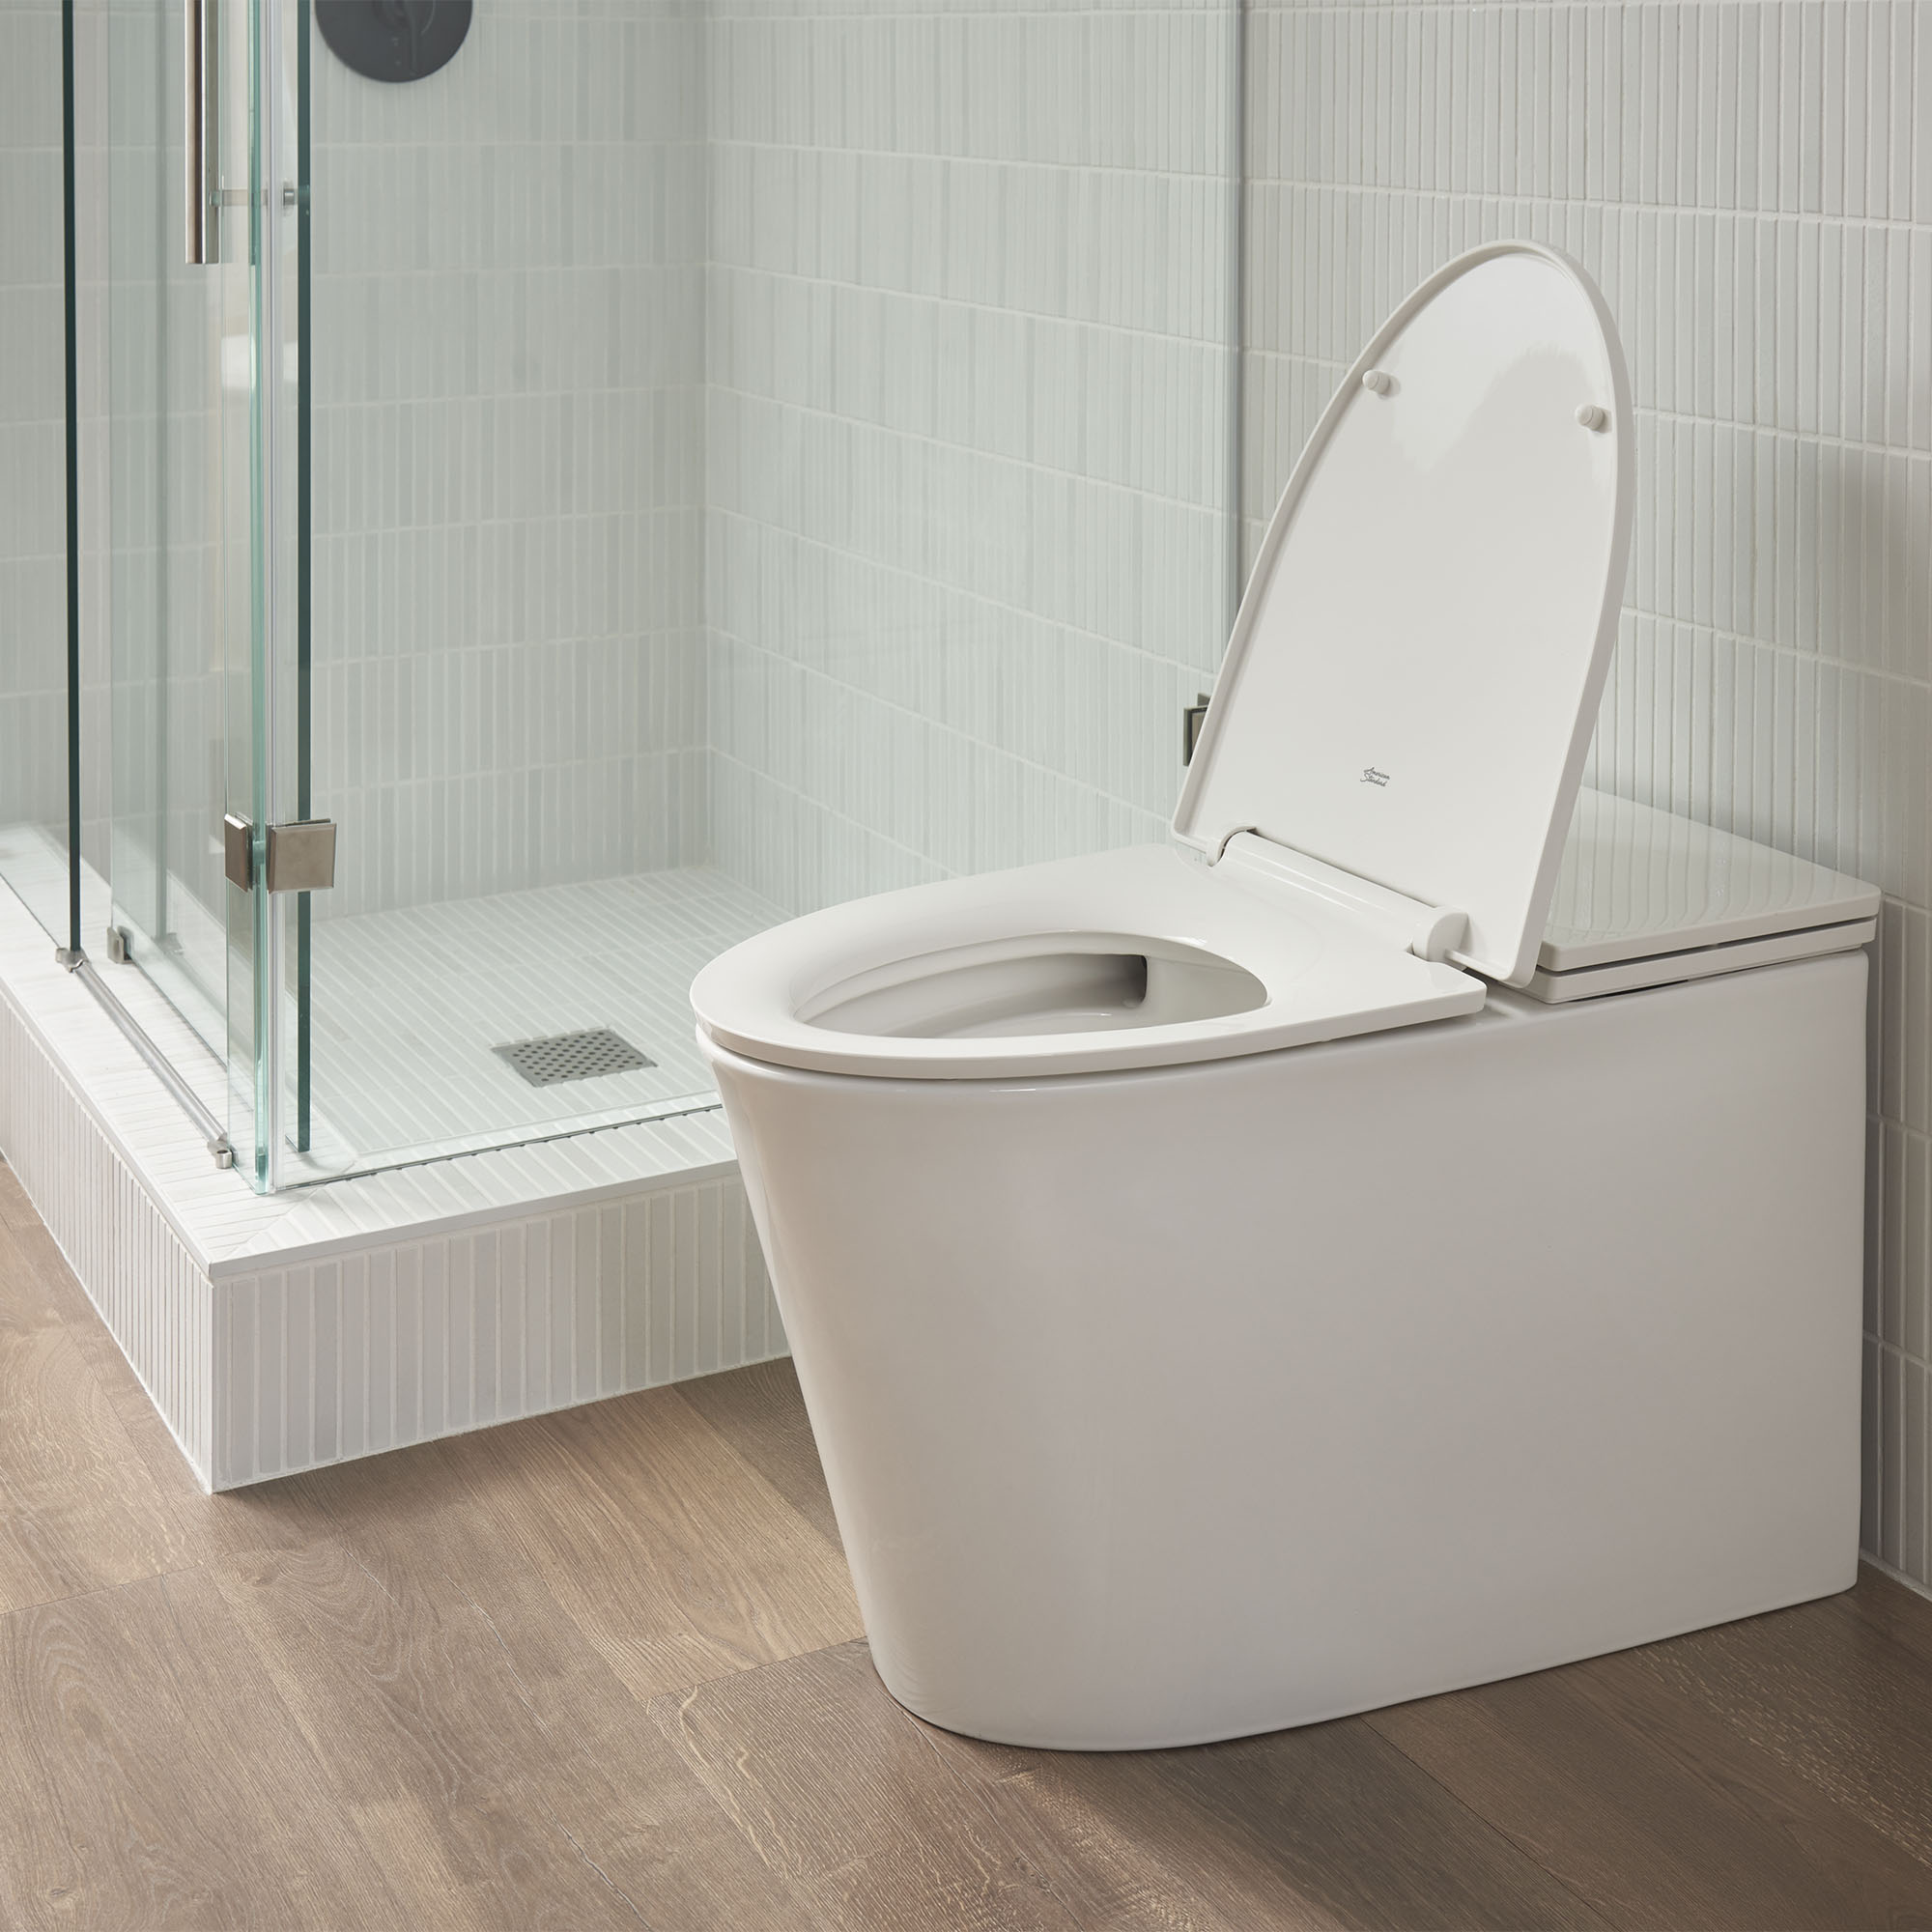 Toilette monopièce Studio S, 1,0 gpc/3,8 lpc, à cuvette allongée à hauteur de chaise avec siège